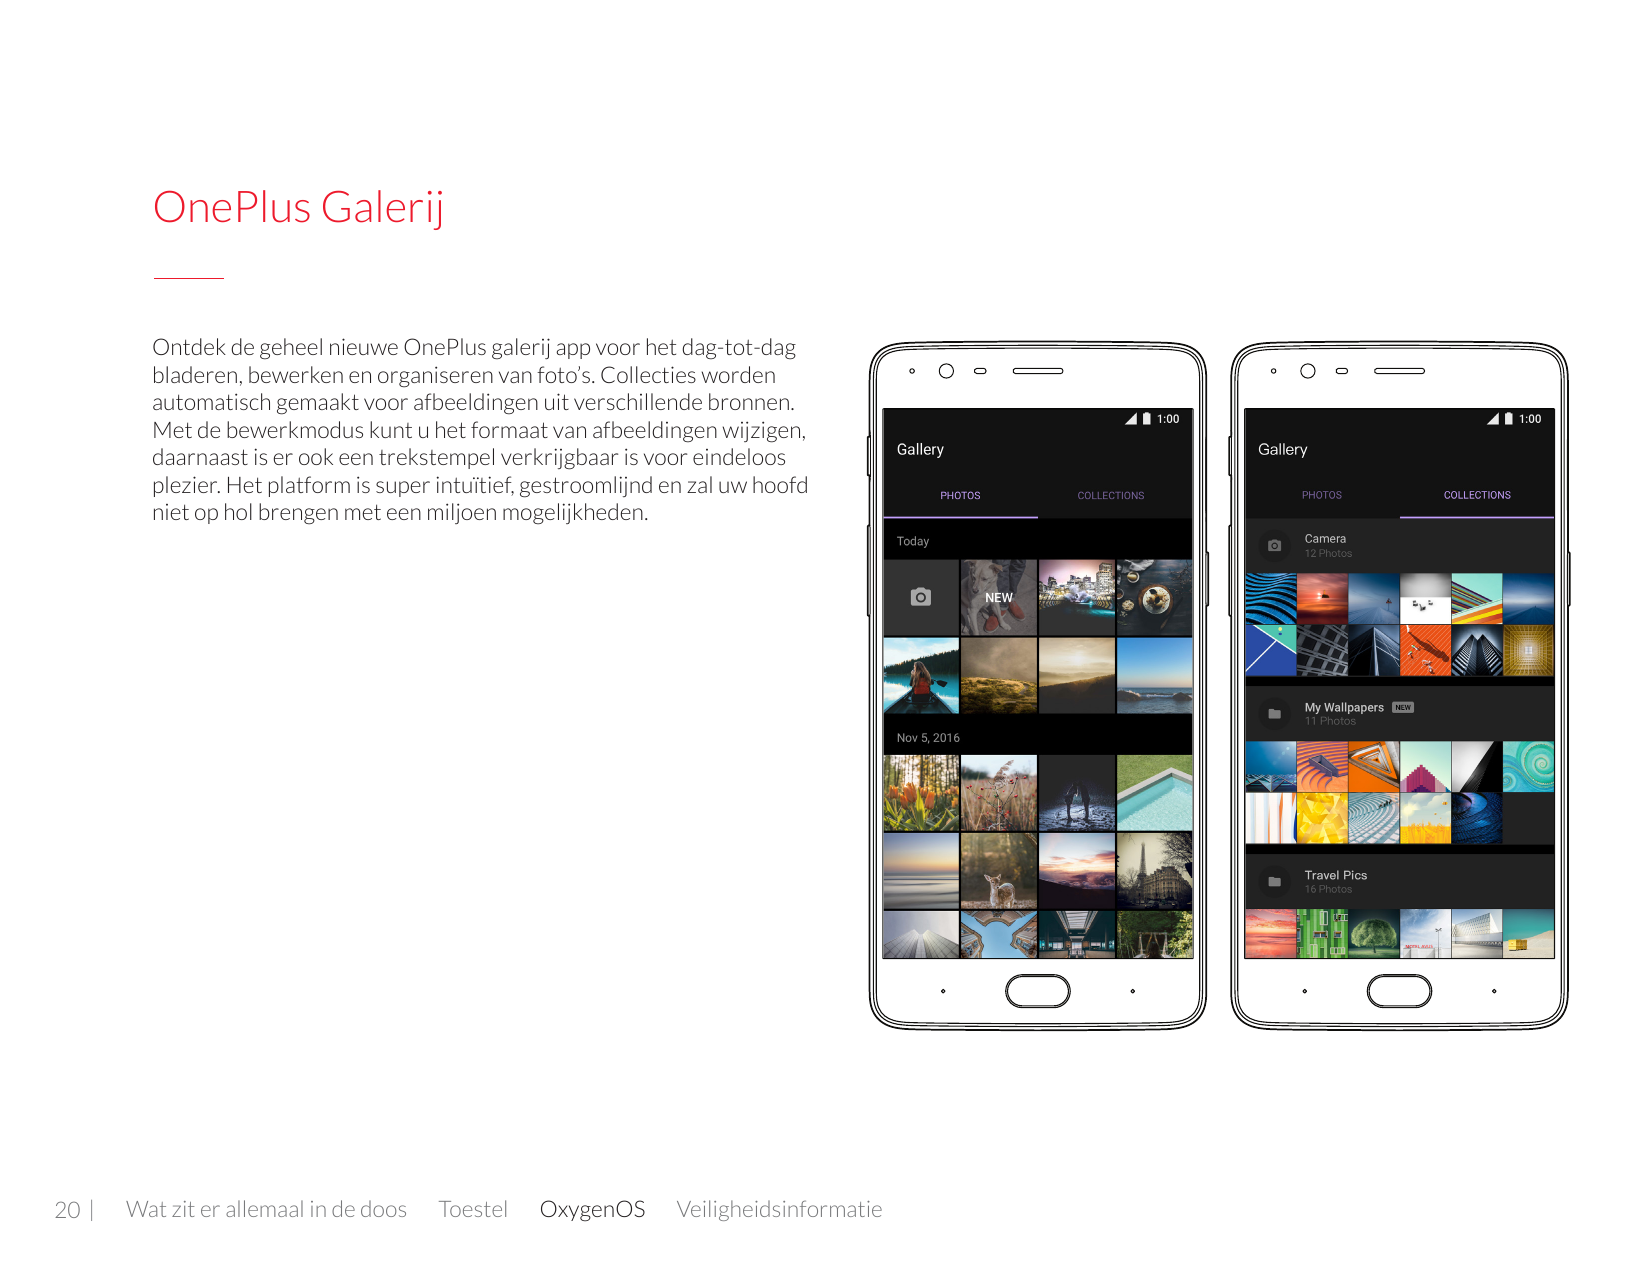 OnePlus GalerijOntdek de geheel nieuwe OnePlus galerij app voor het dag-tot-dagbladeren, bewerken en organiseren van foto’s. Col